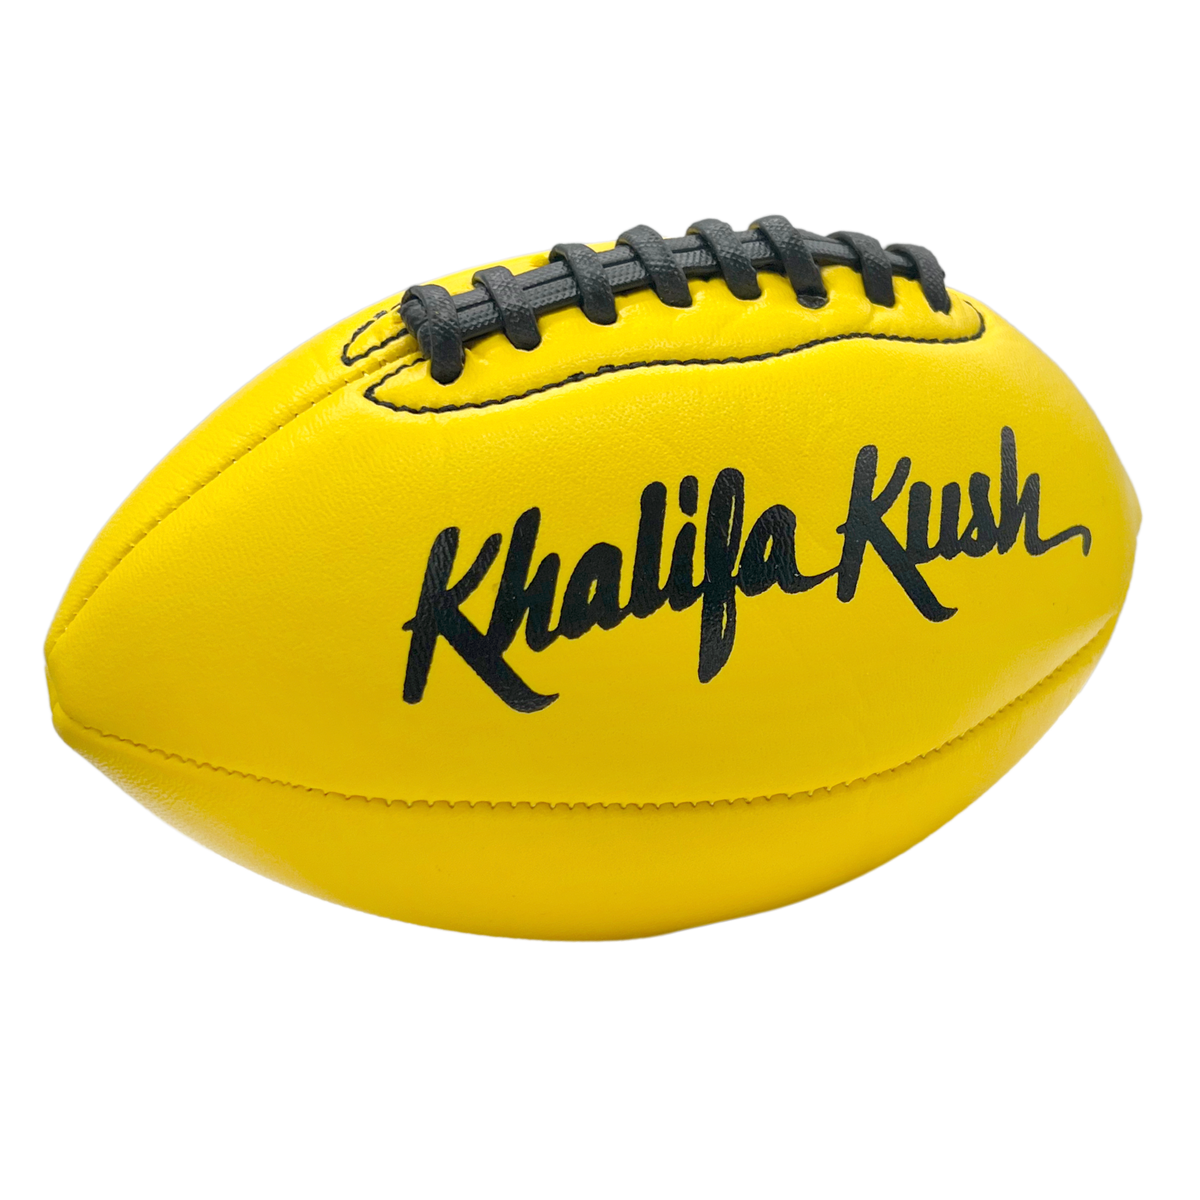 Khalifa Kush Football